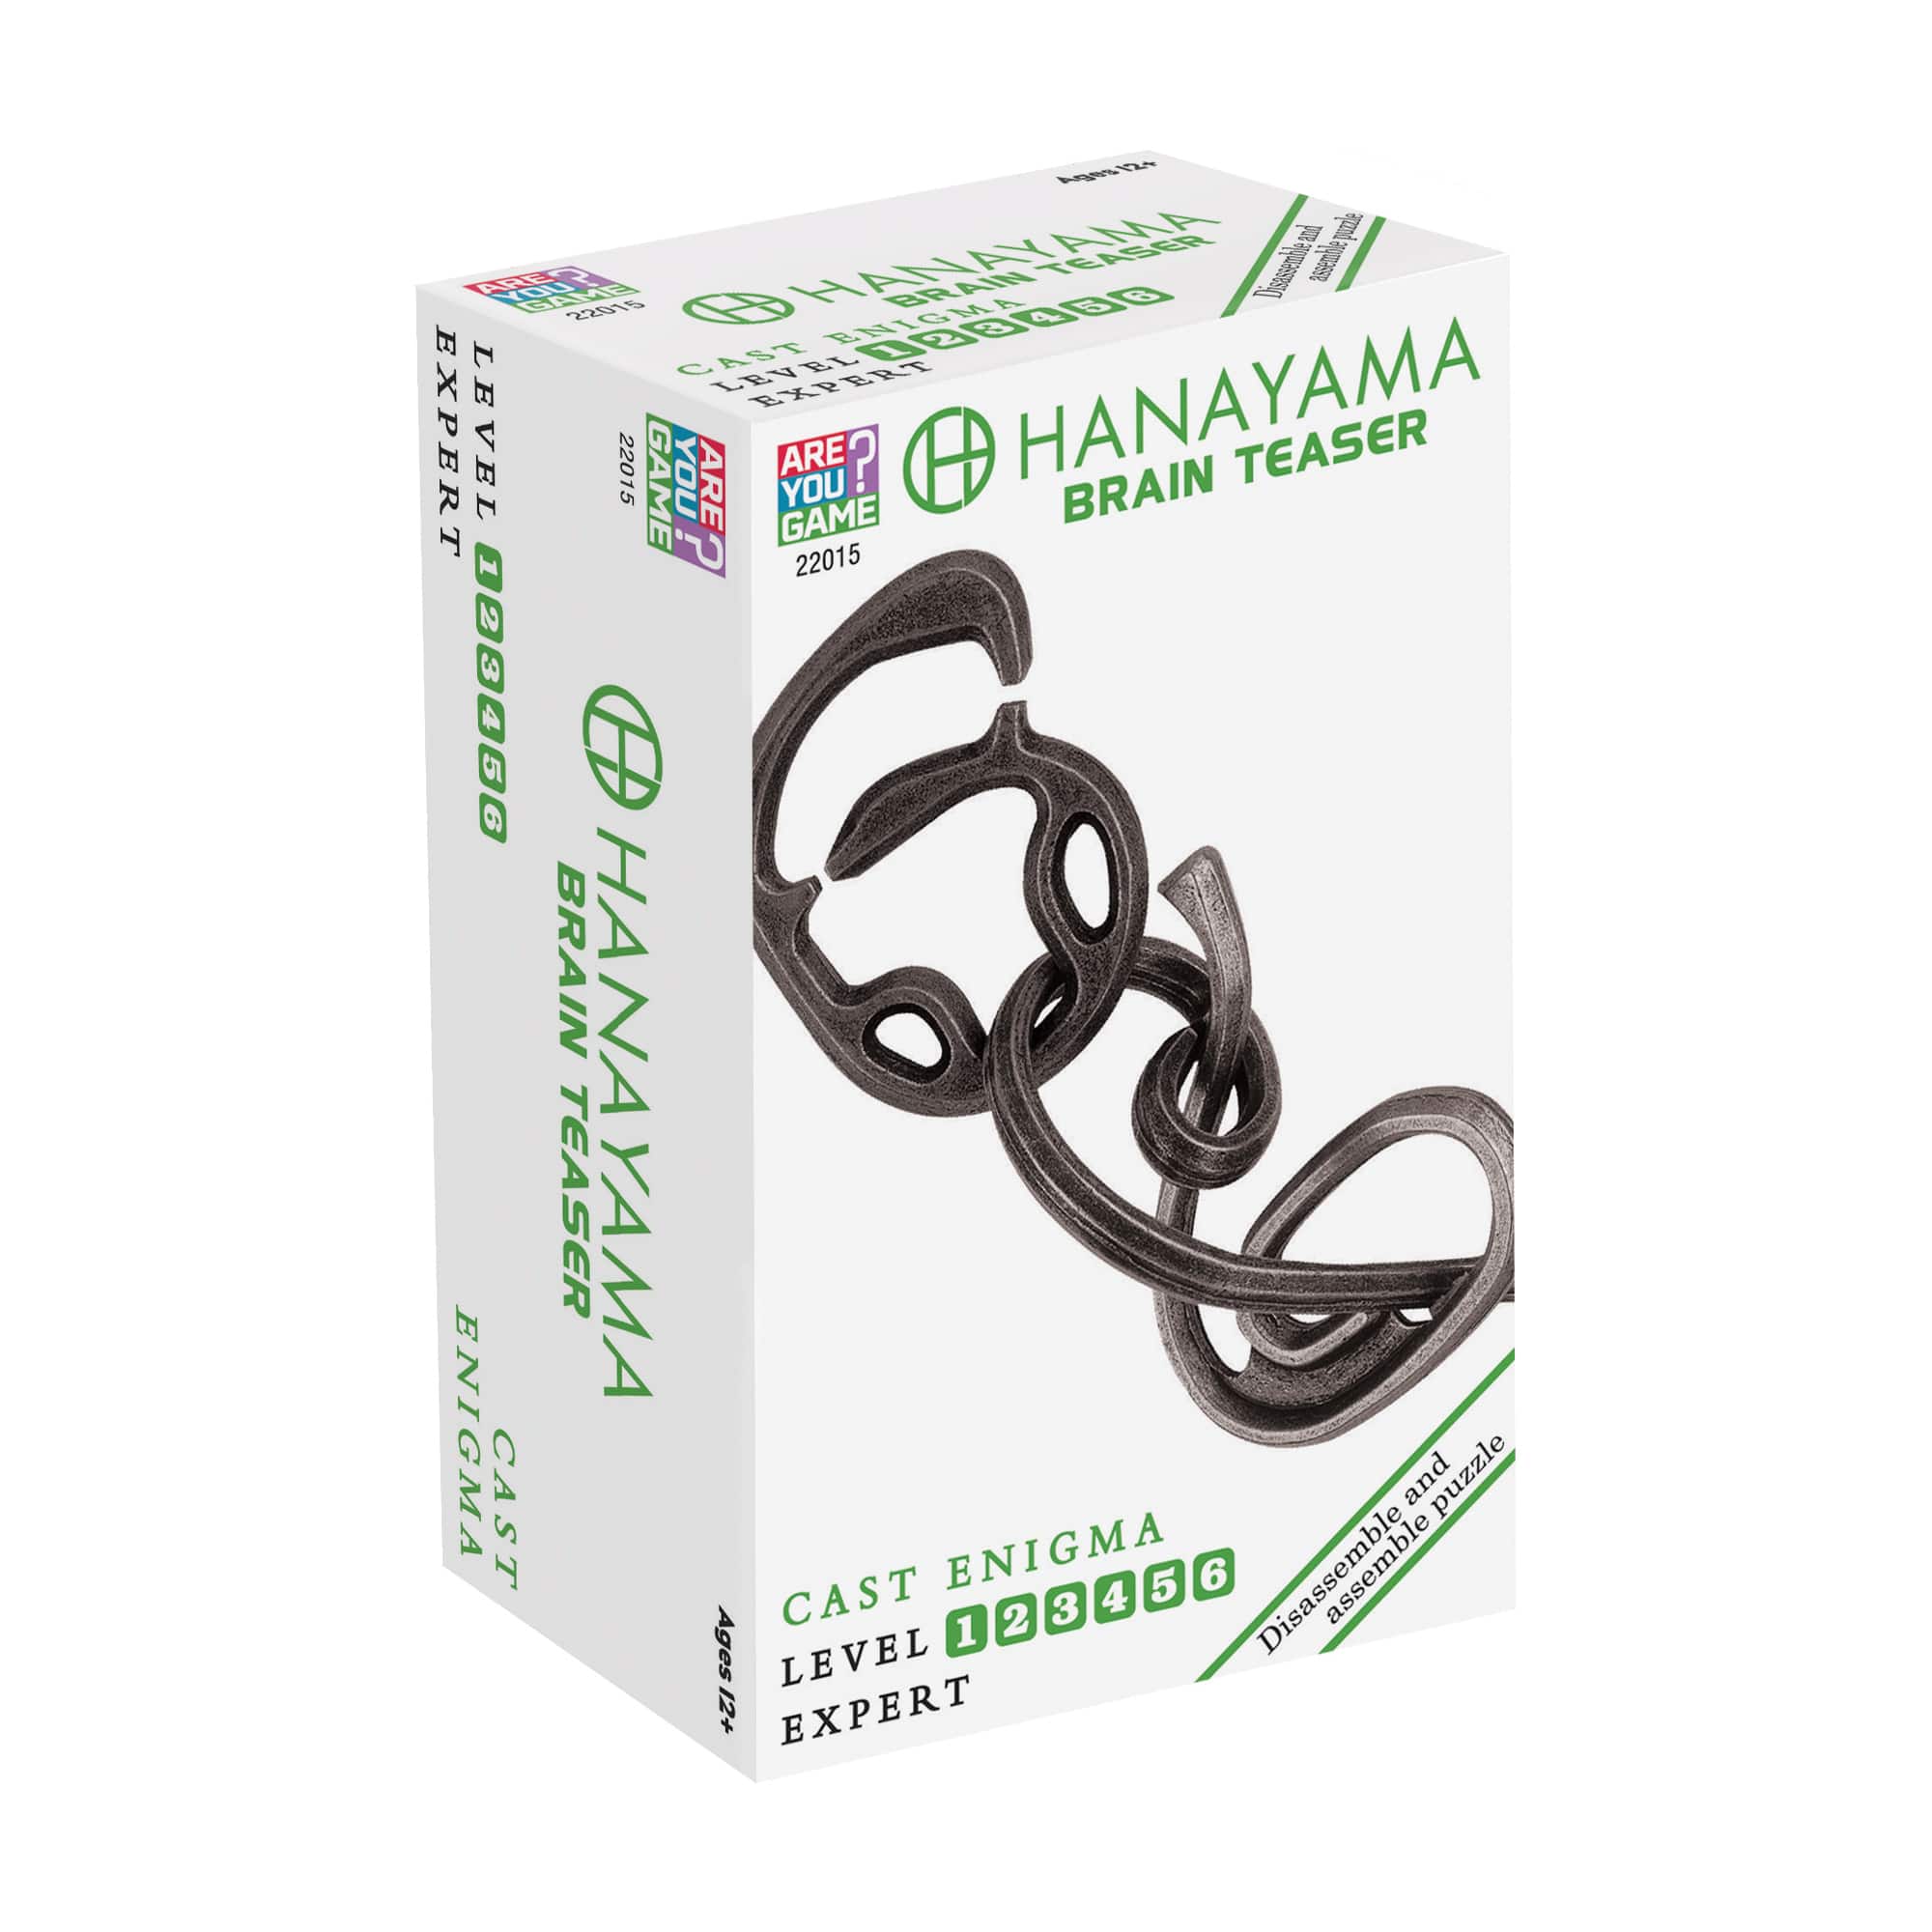 Hanayama Level 6 Cast Enigma Puzzle